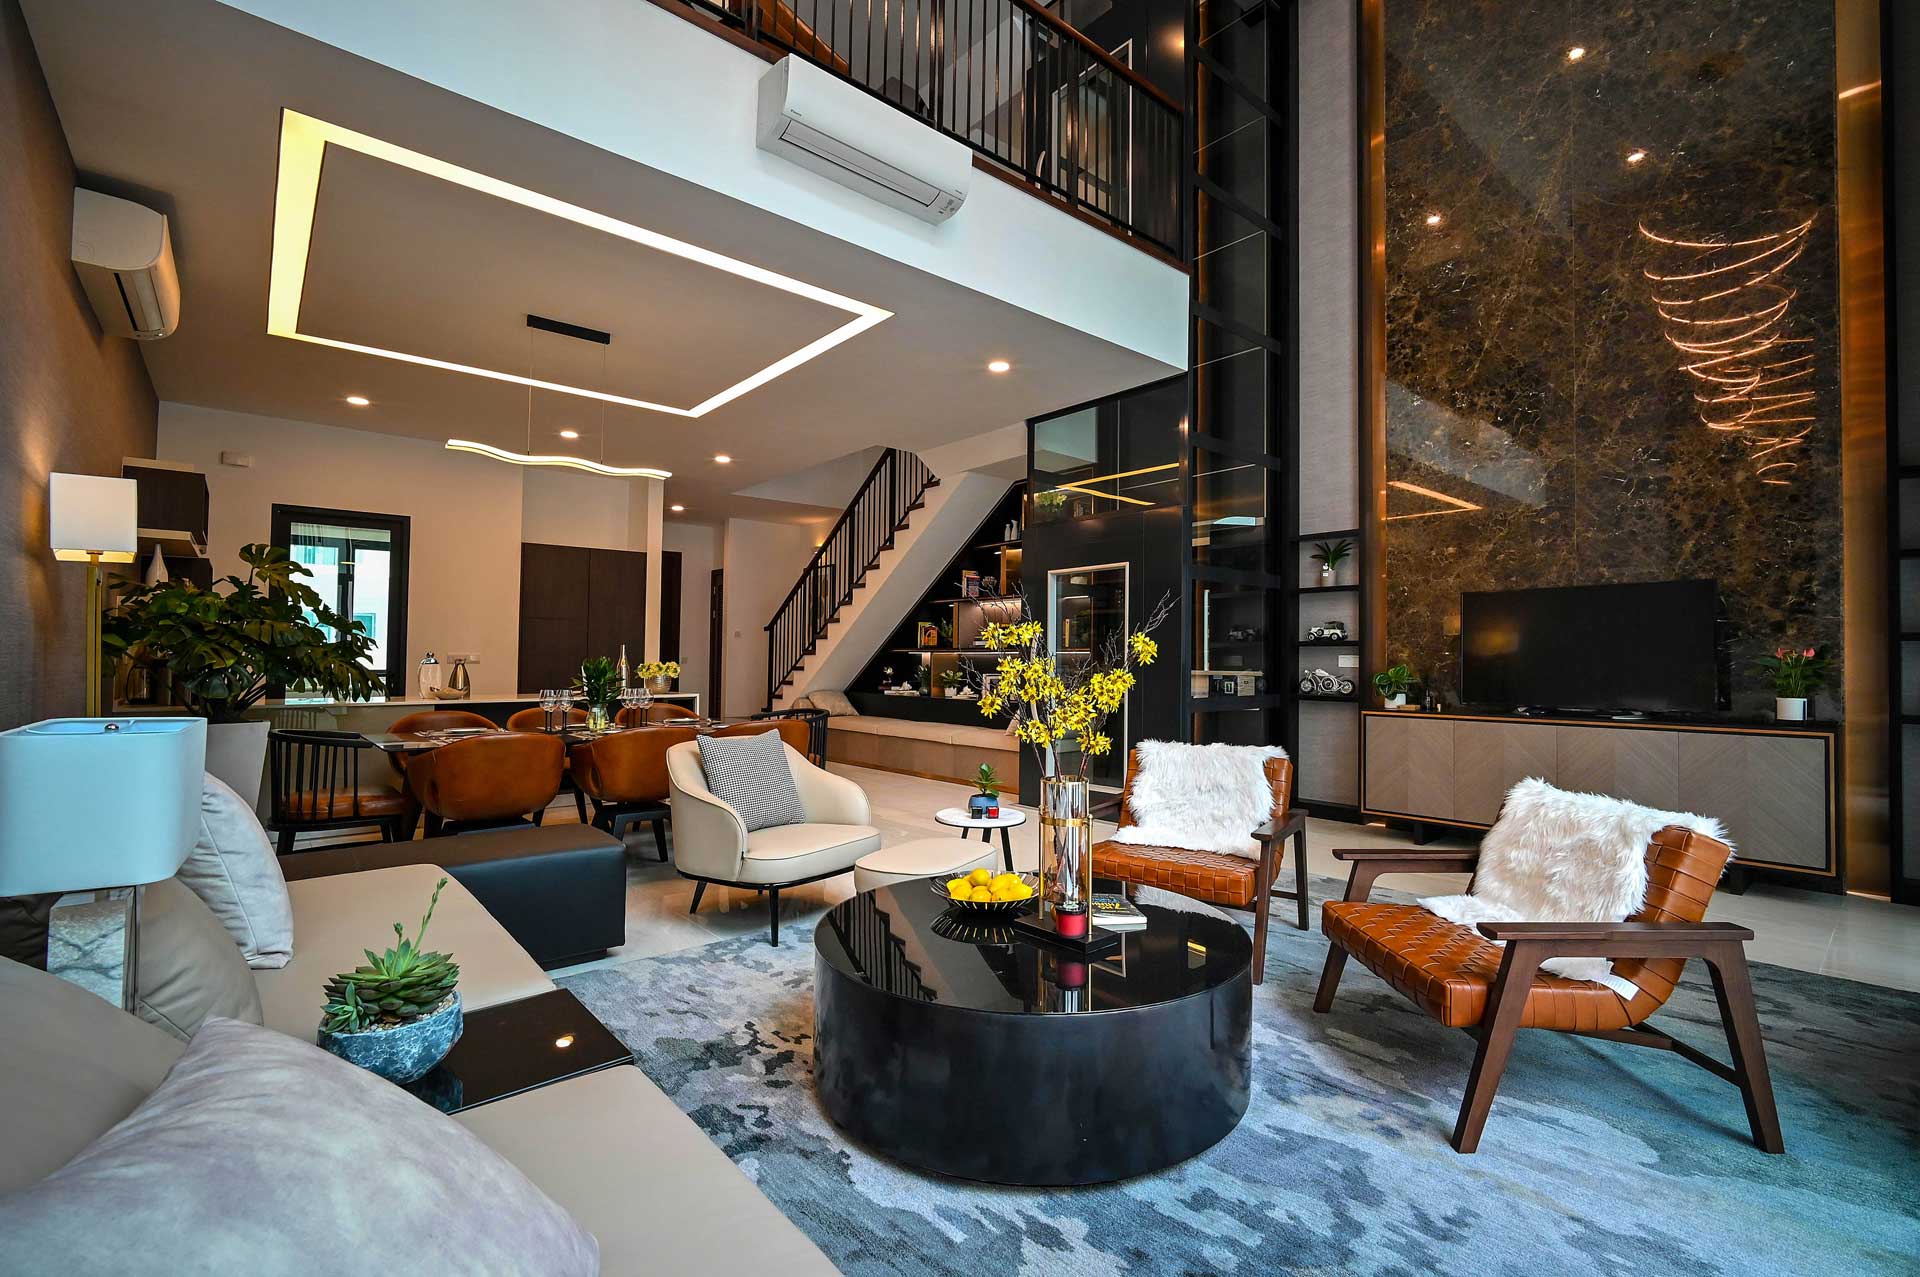 Interior Design Companies In Dubai Luxury Orchid Architecture Engineering Consultants